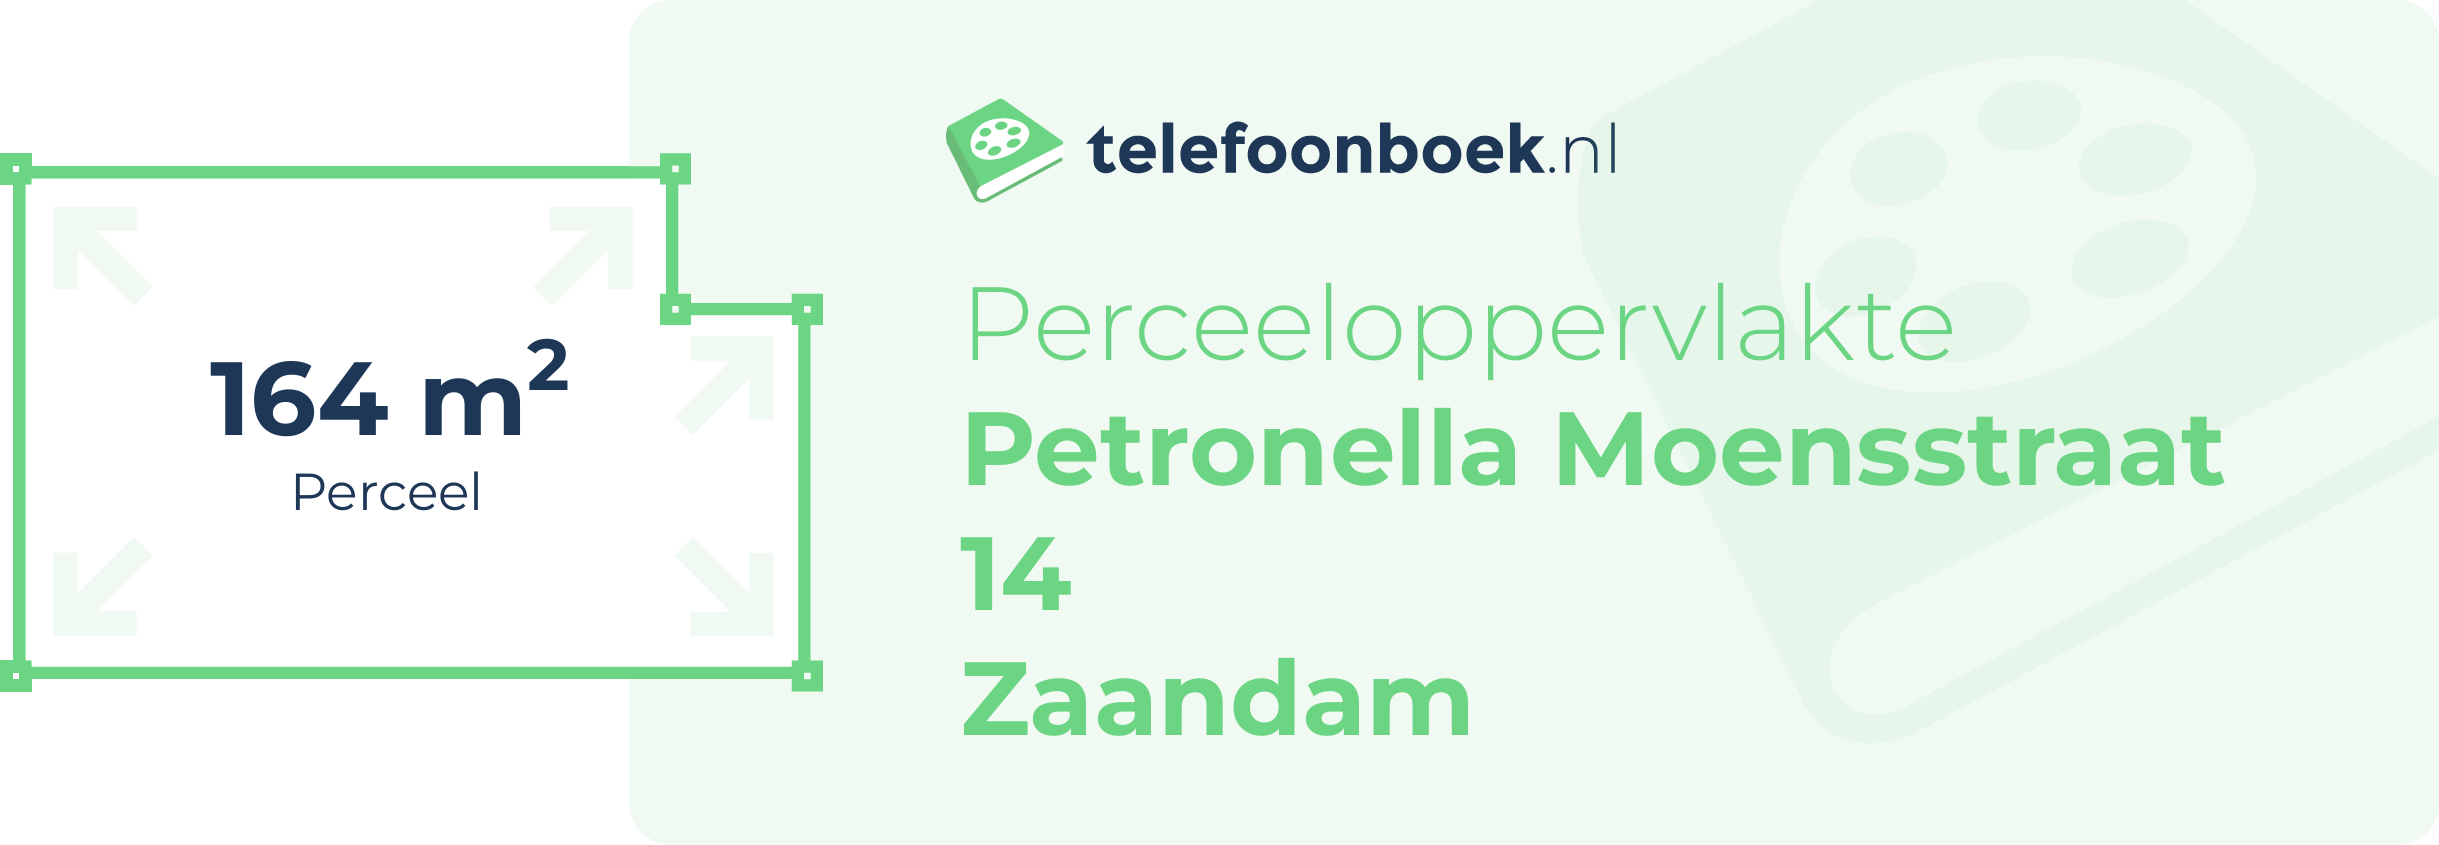 Perceeloppervlakte Petronella Moensstraat 14 Zaandam